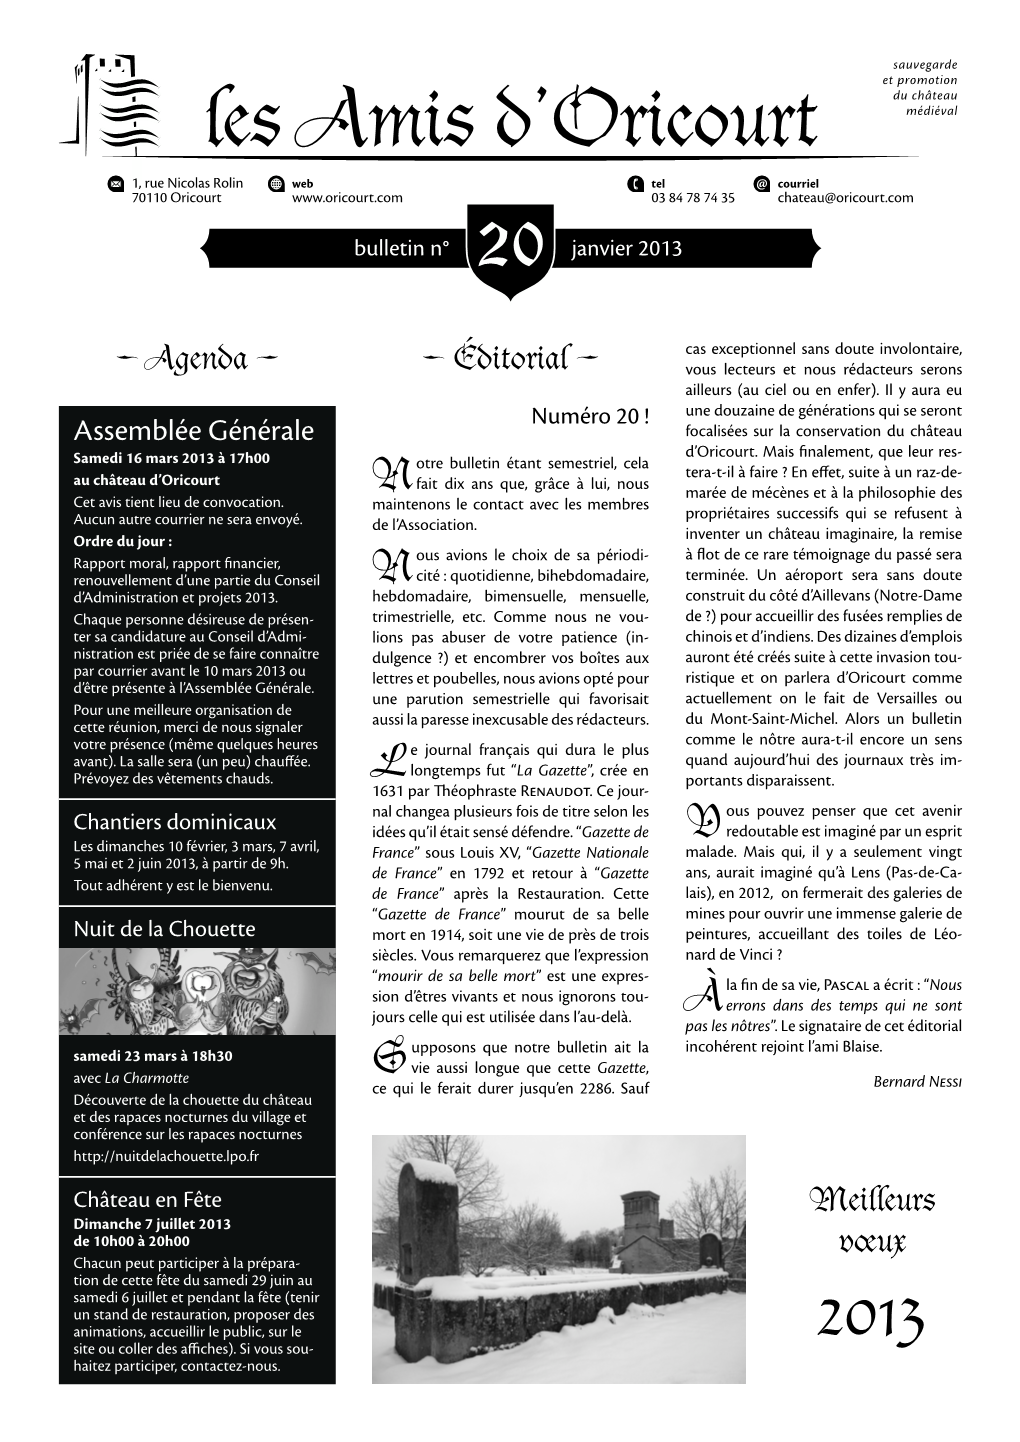 Les Amis D'oricourt : Bulletin N°20 (Janvier 2013)